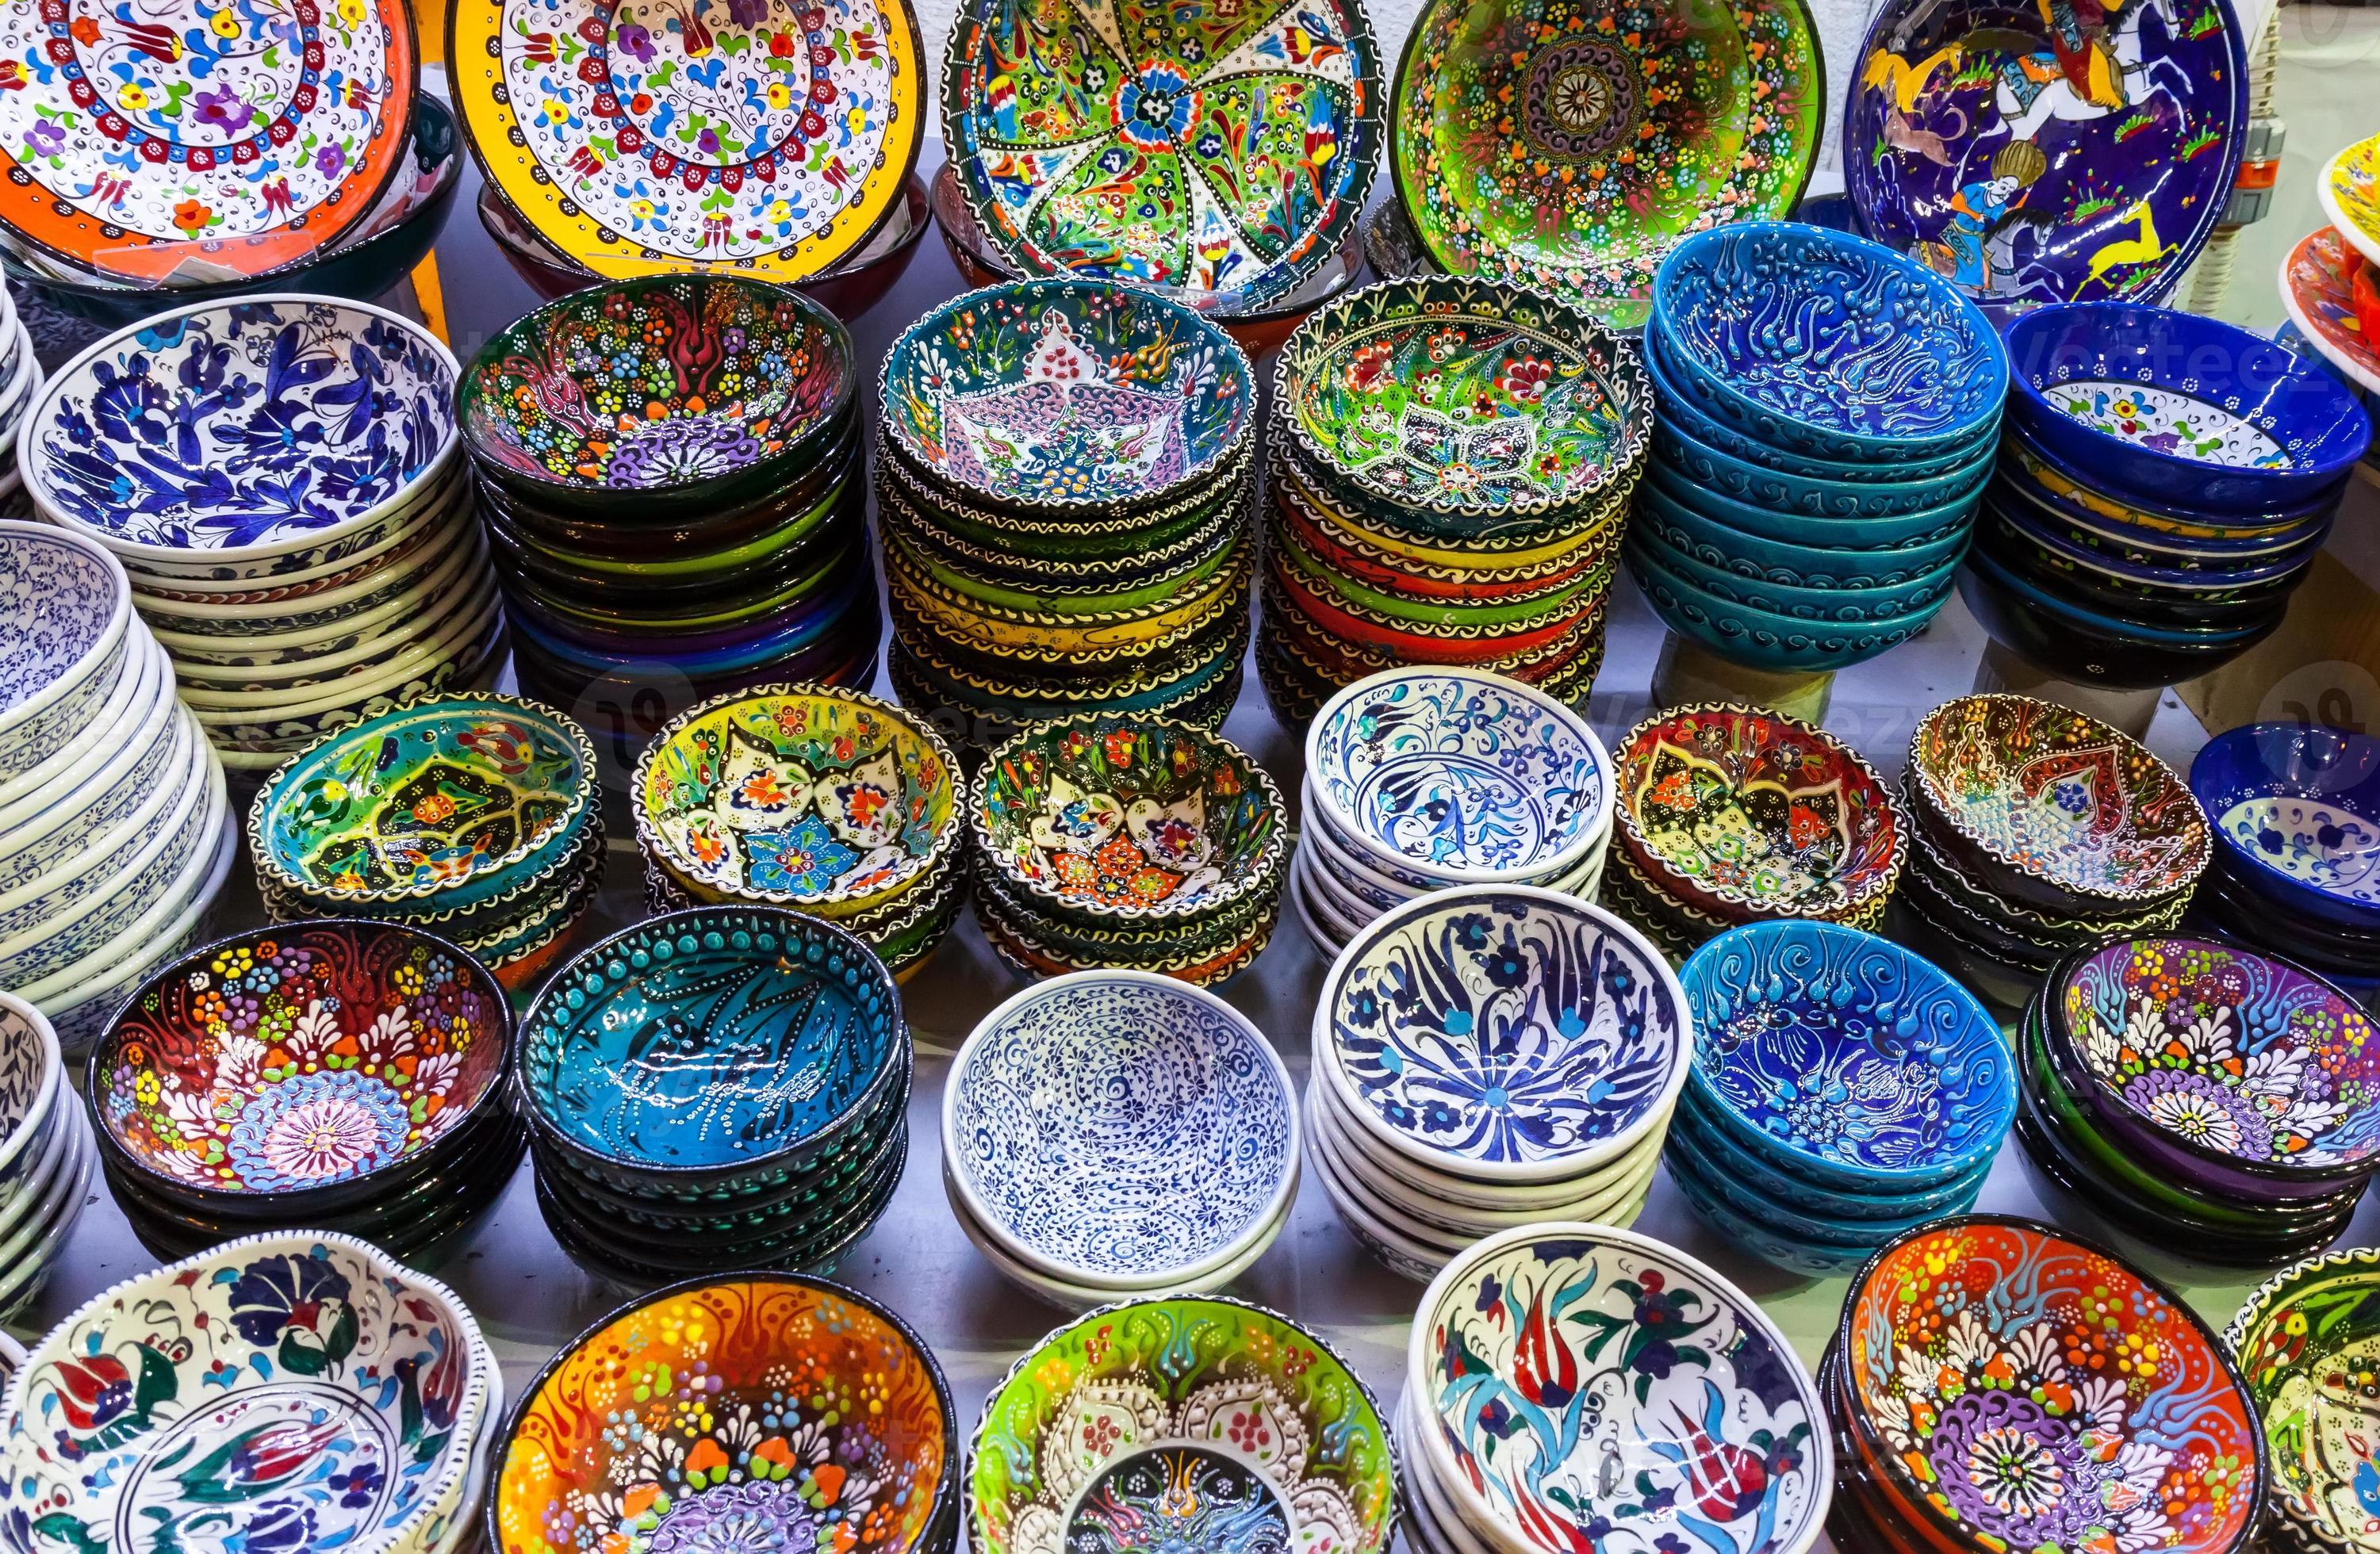 klassieke Turkse keramiek op de markt foto